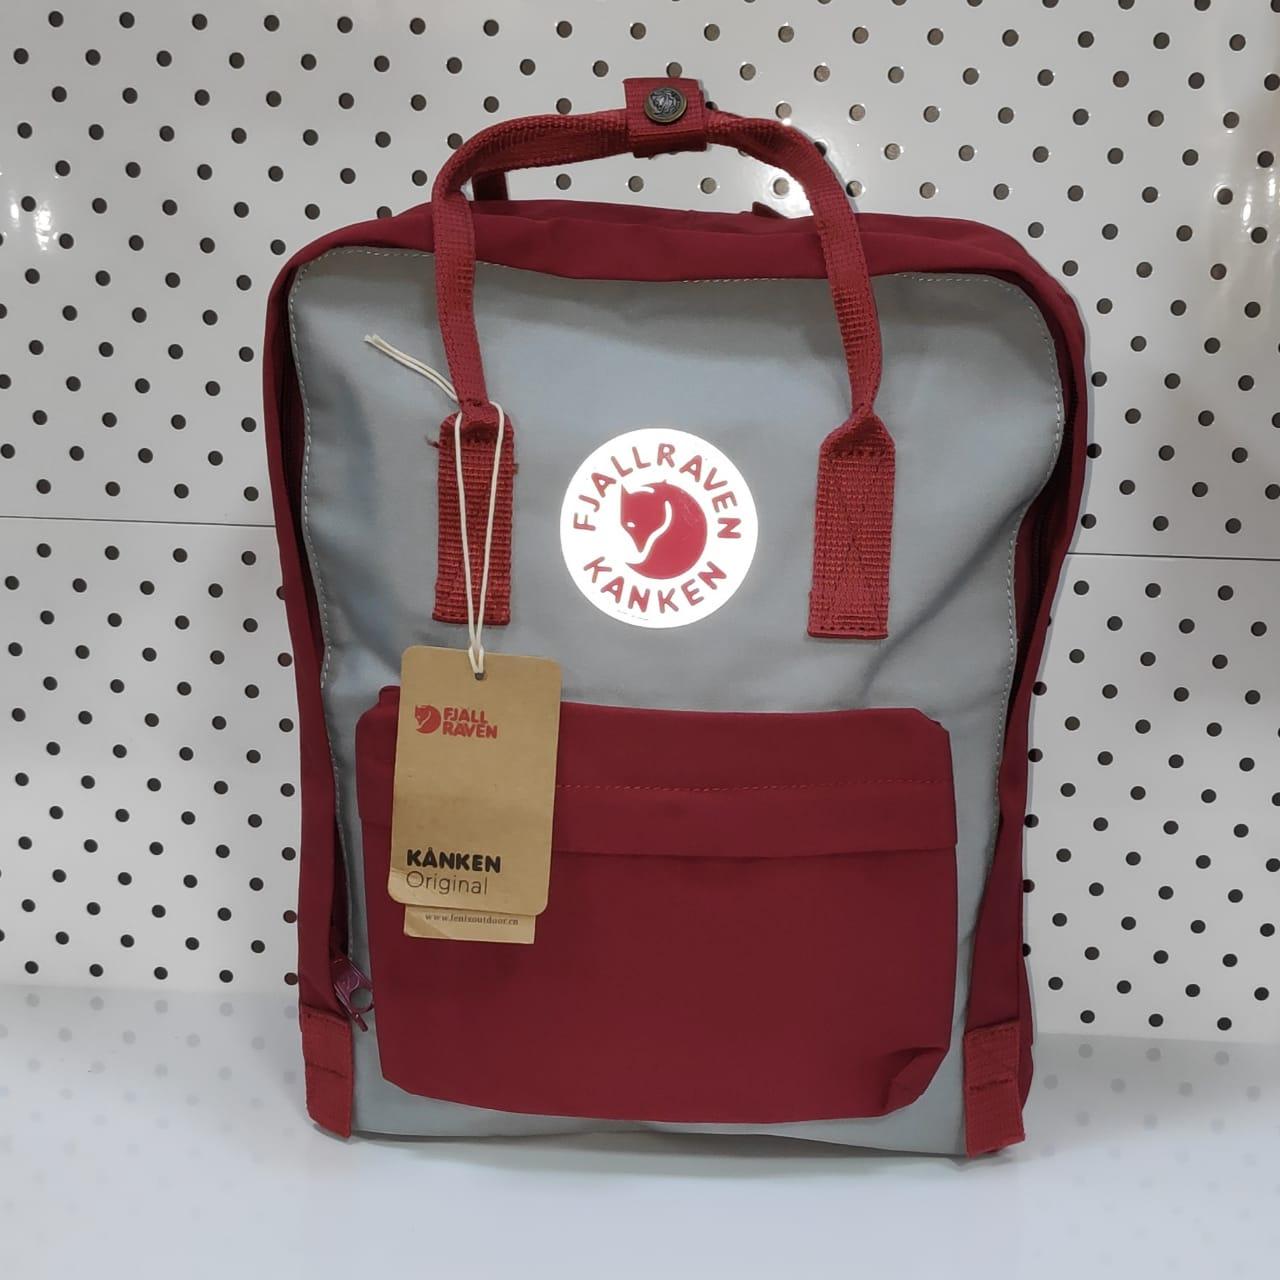 Рюкзак Fjallraven Kanken Classic. Цвет Бордовый и серый отличный вариант  для повседневных прогулок (id 83562115)